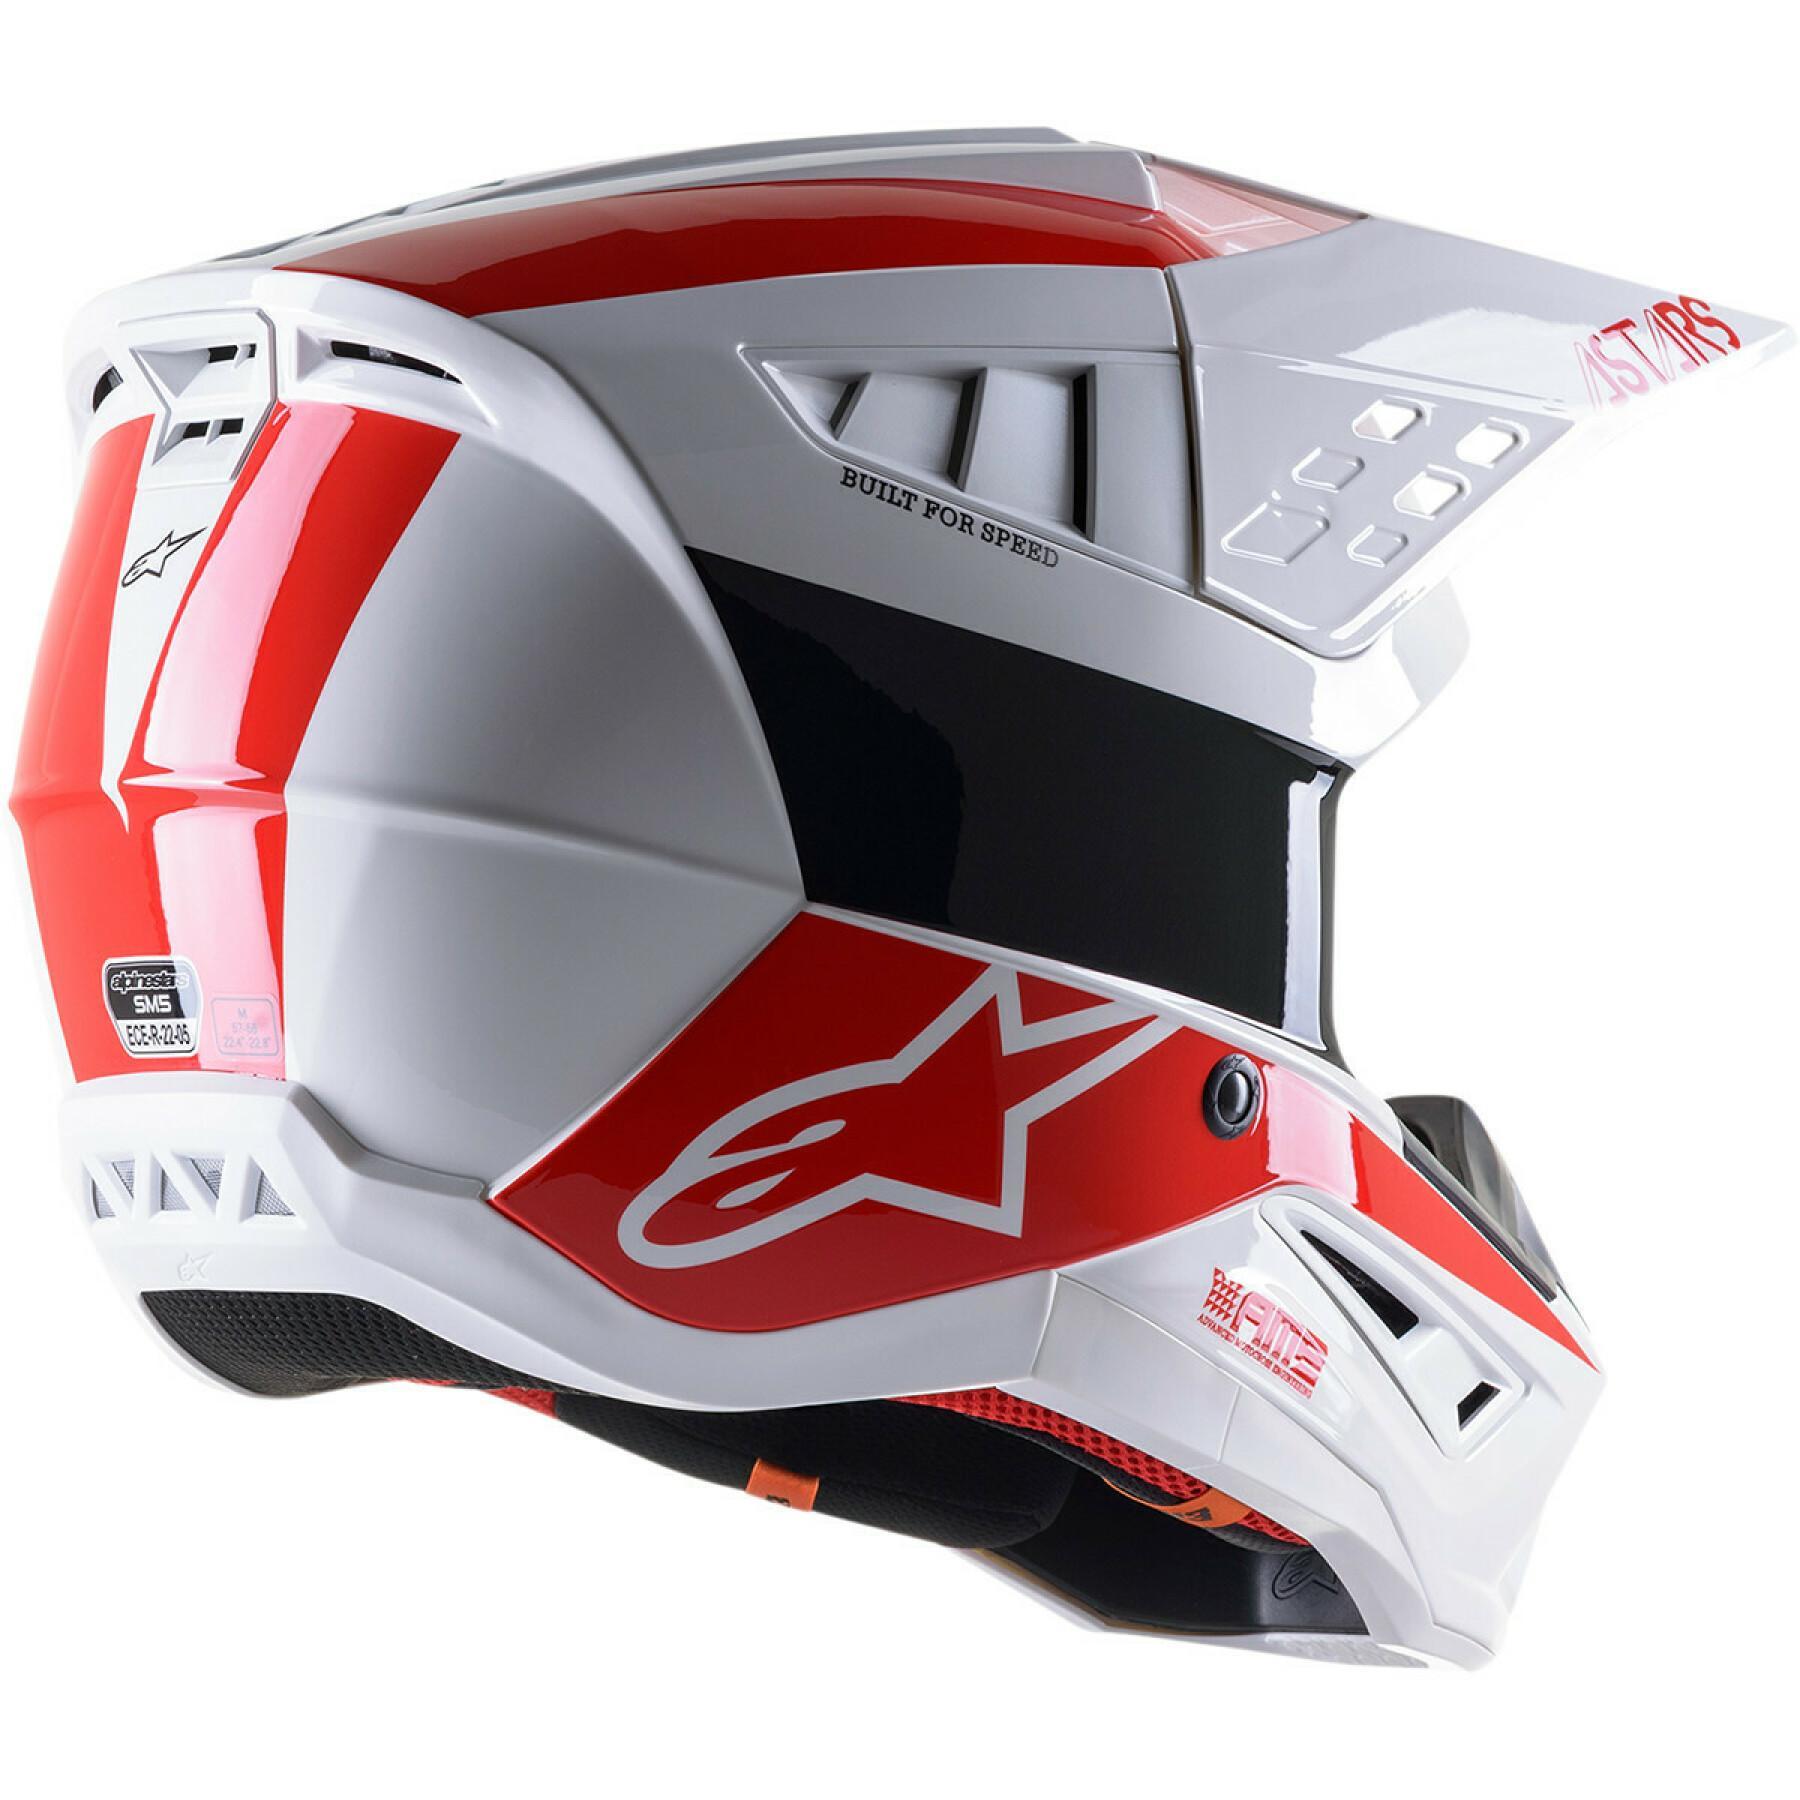 Motorrad-Cross-Helm Alpinestars SM5 bond